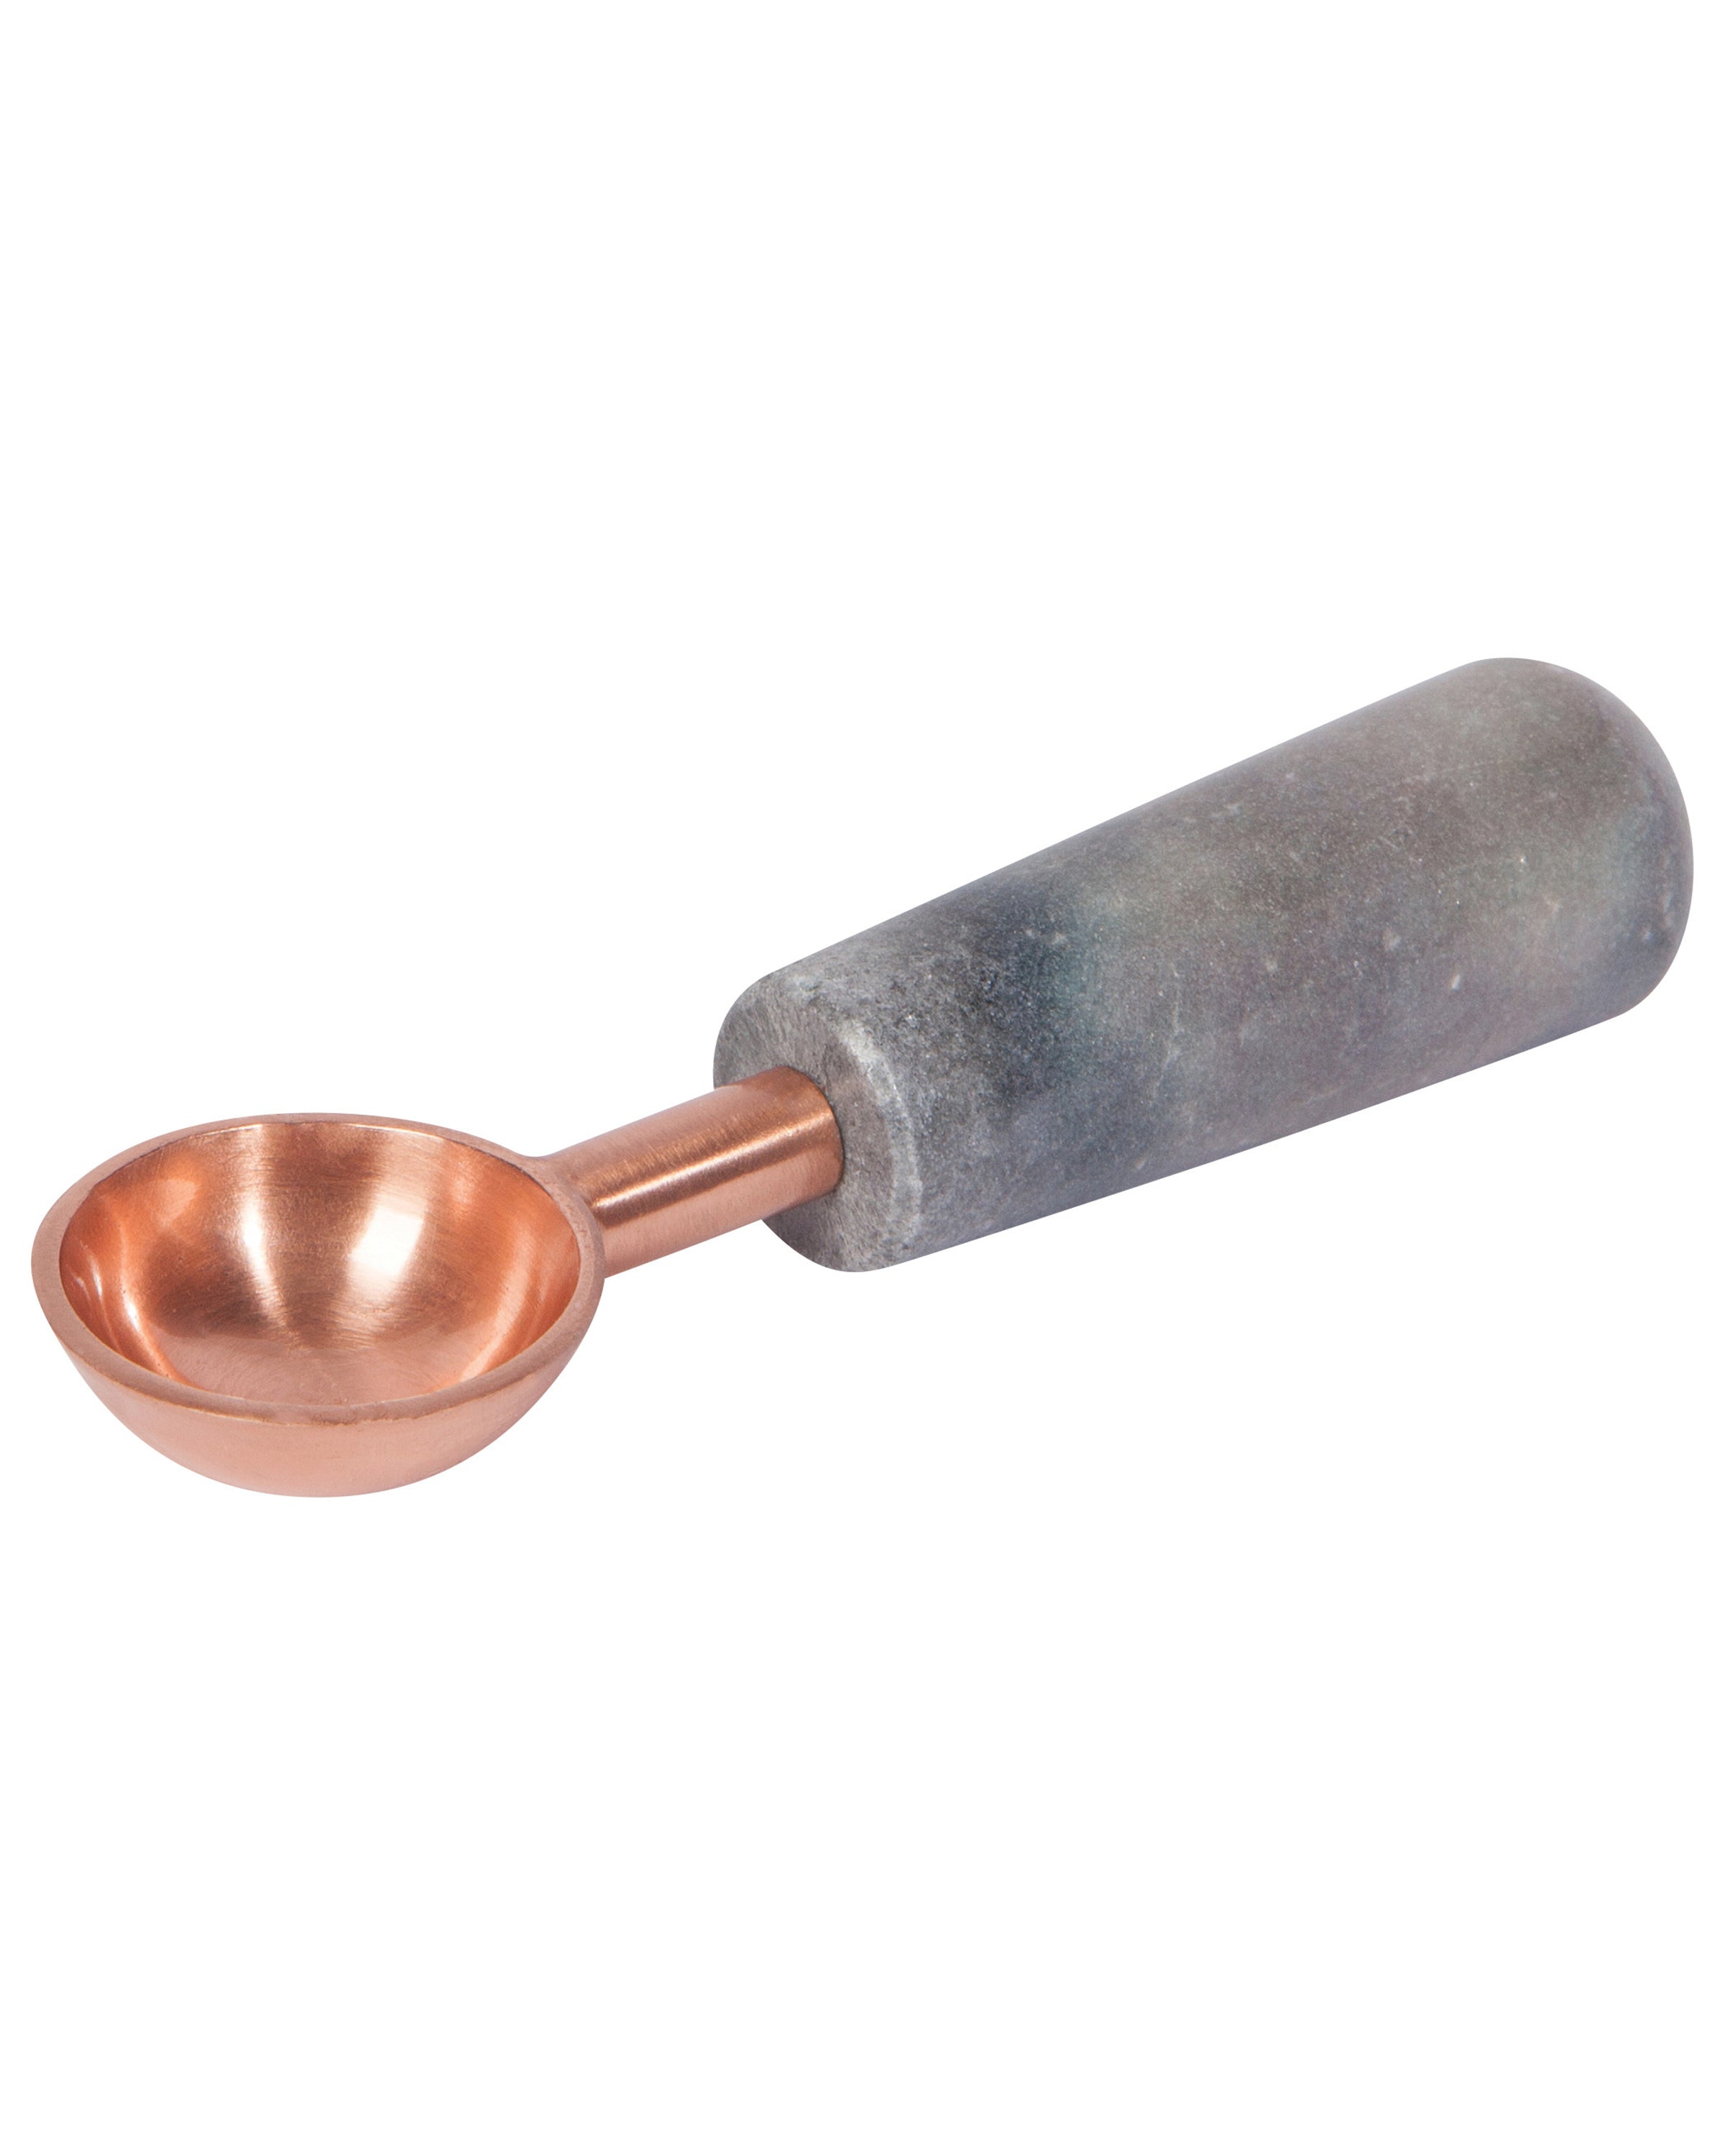 Modern Hammered Stainless Steel Measuring Spoons: Danica Heirloom